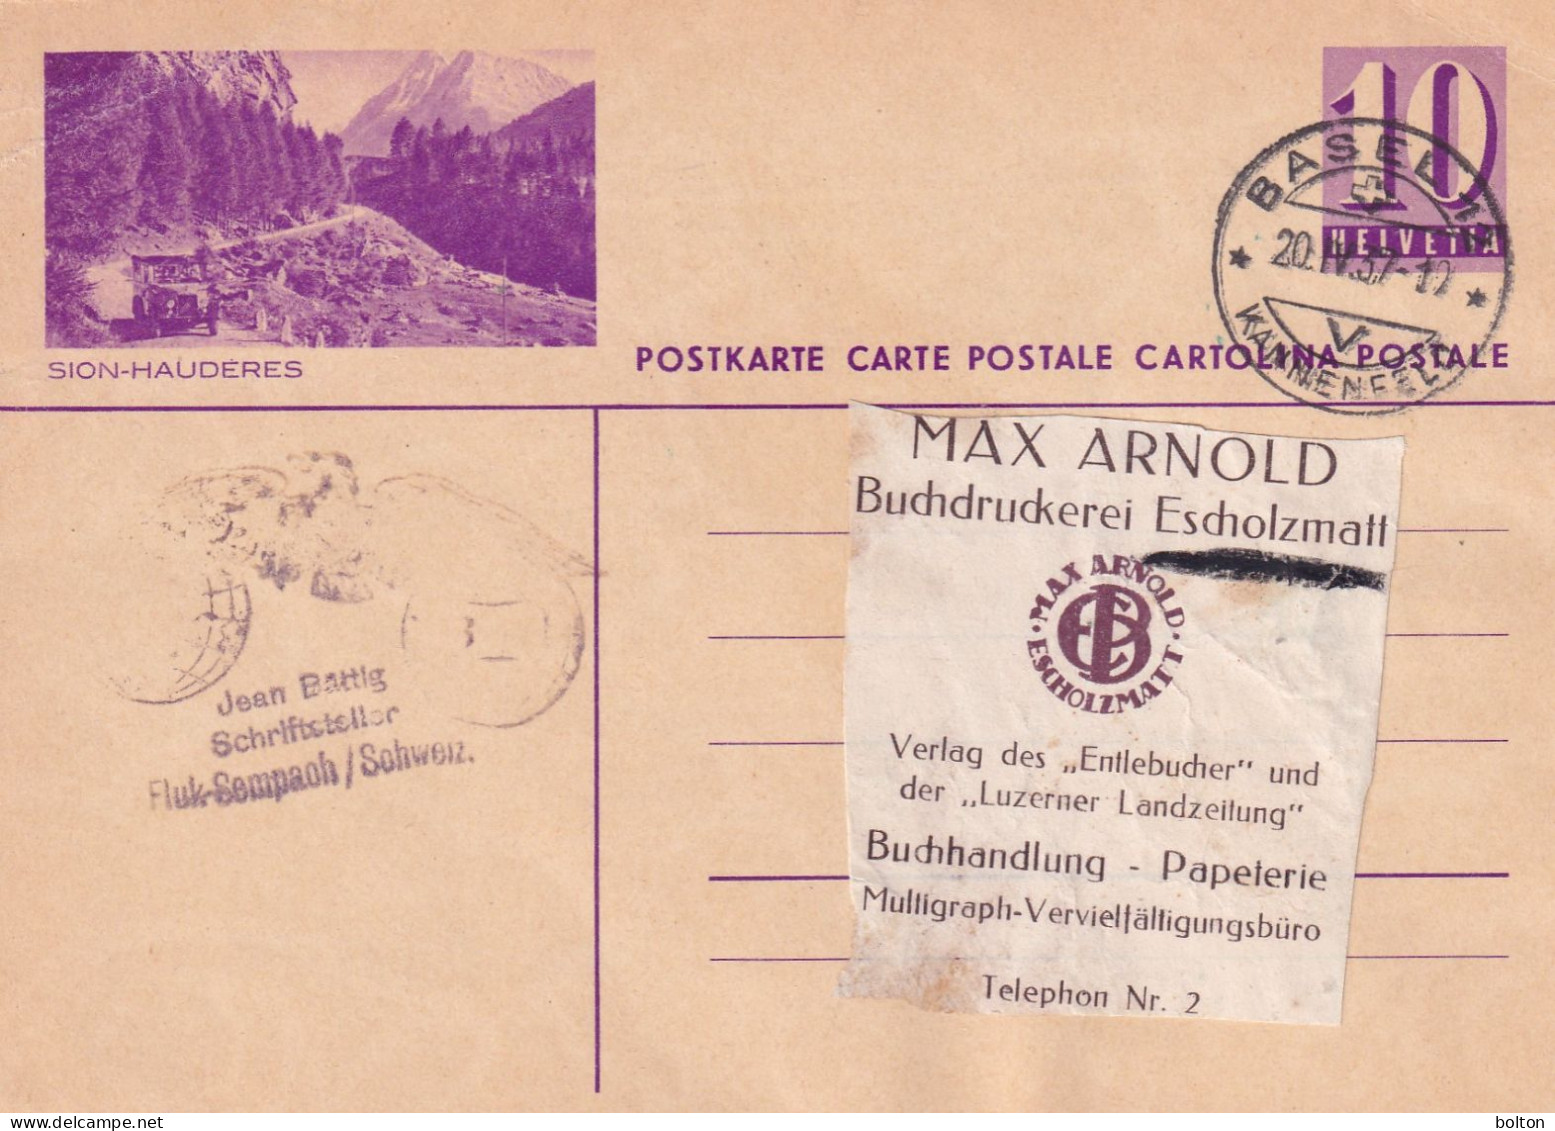 1937 Svizzera Intero Postale Figurato  AUTOBUS  SION-HAUDERES - Covers & Documents